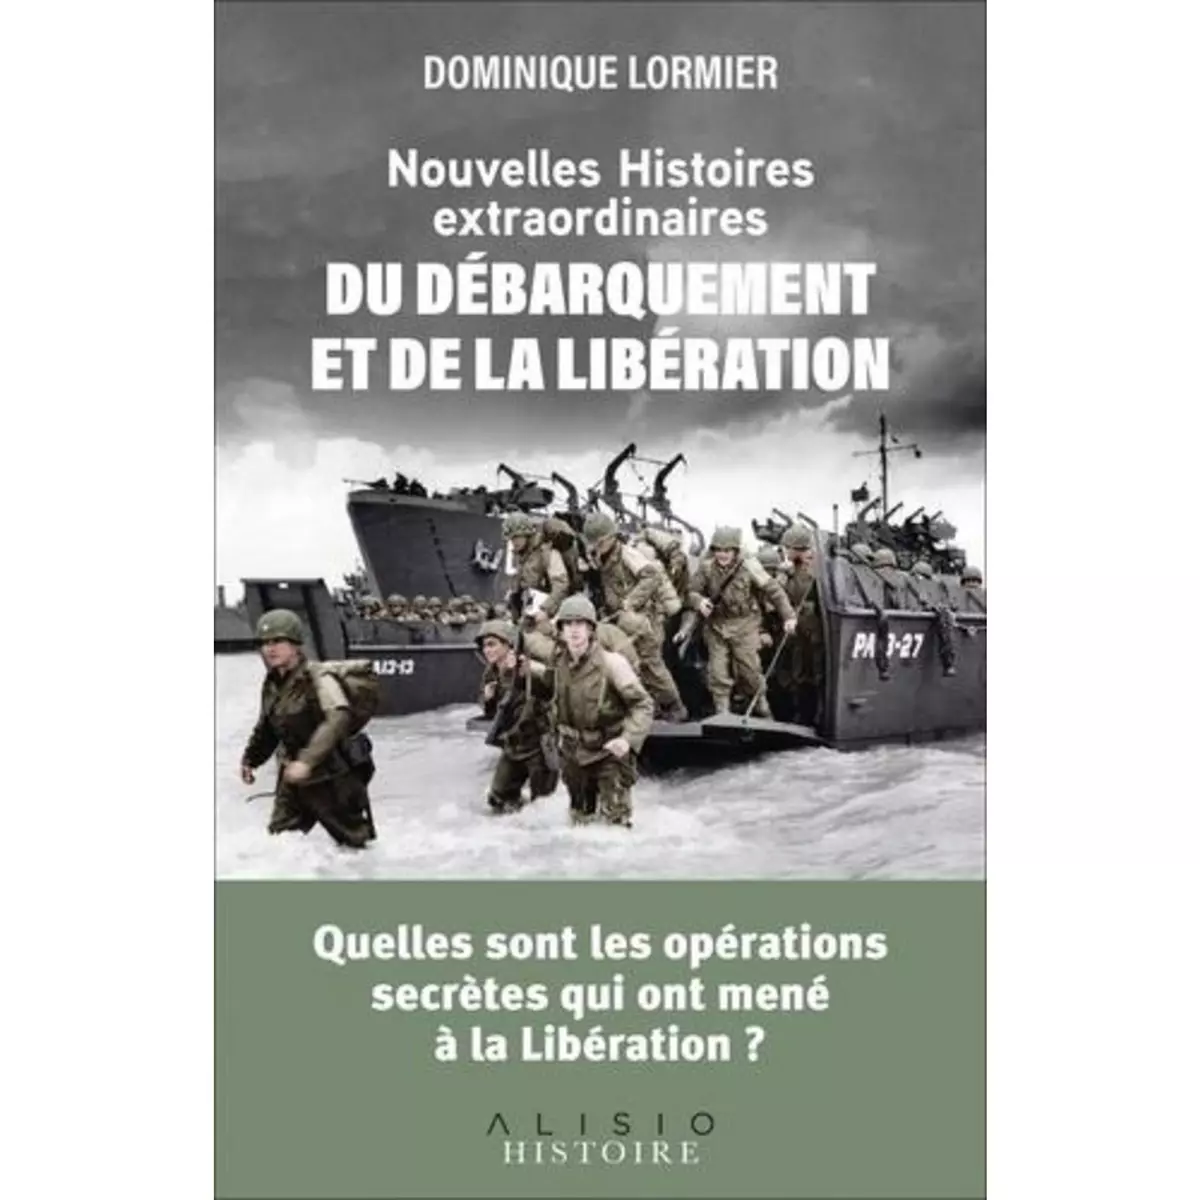  NOUVELLES HISTOIRES EXTRAORDINAIRES DU DEBARQUEMENT ET DE LA LIBERATION, Lormier Dominique